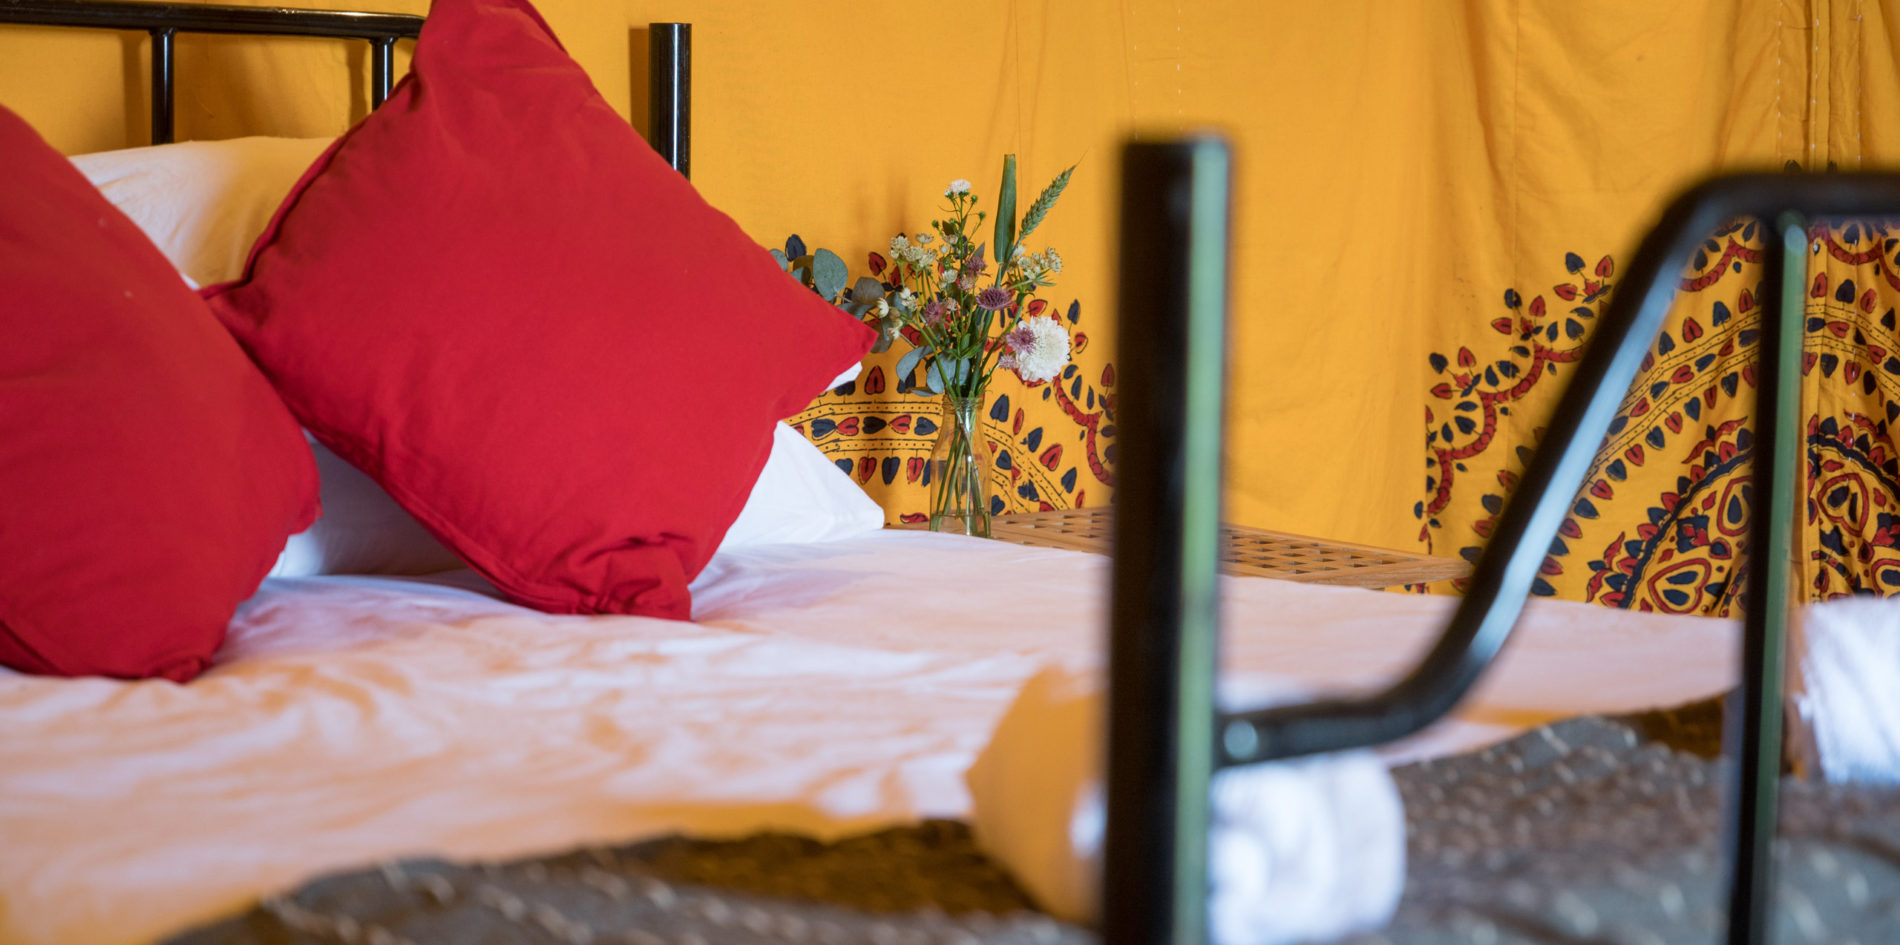 sleeping arrangements - Bedouin Tent